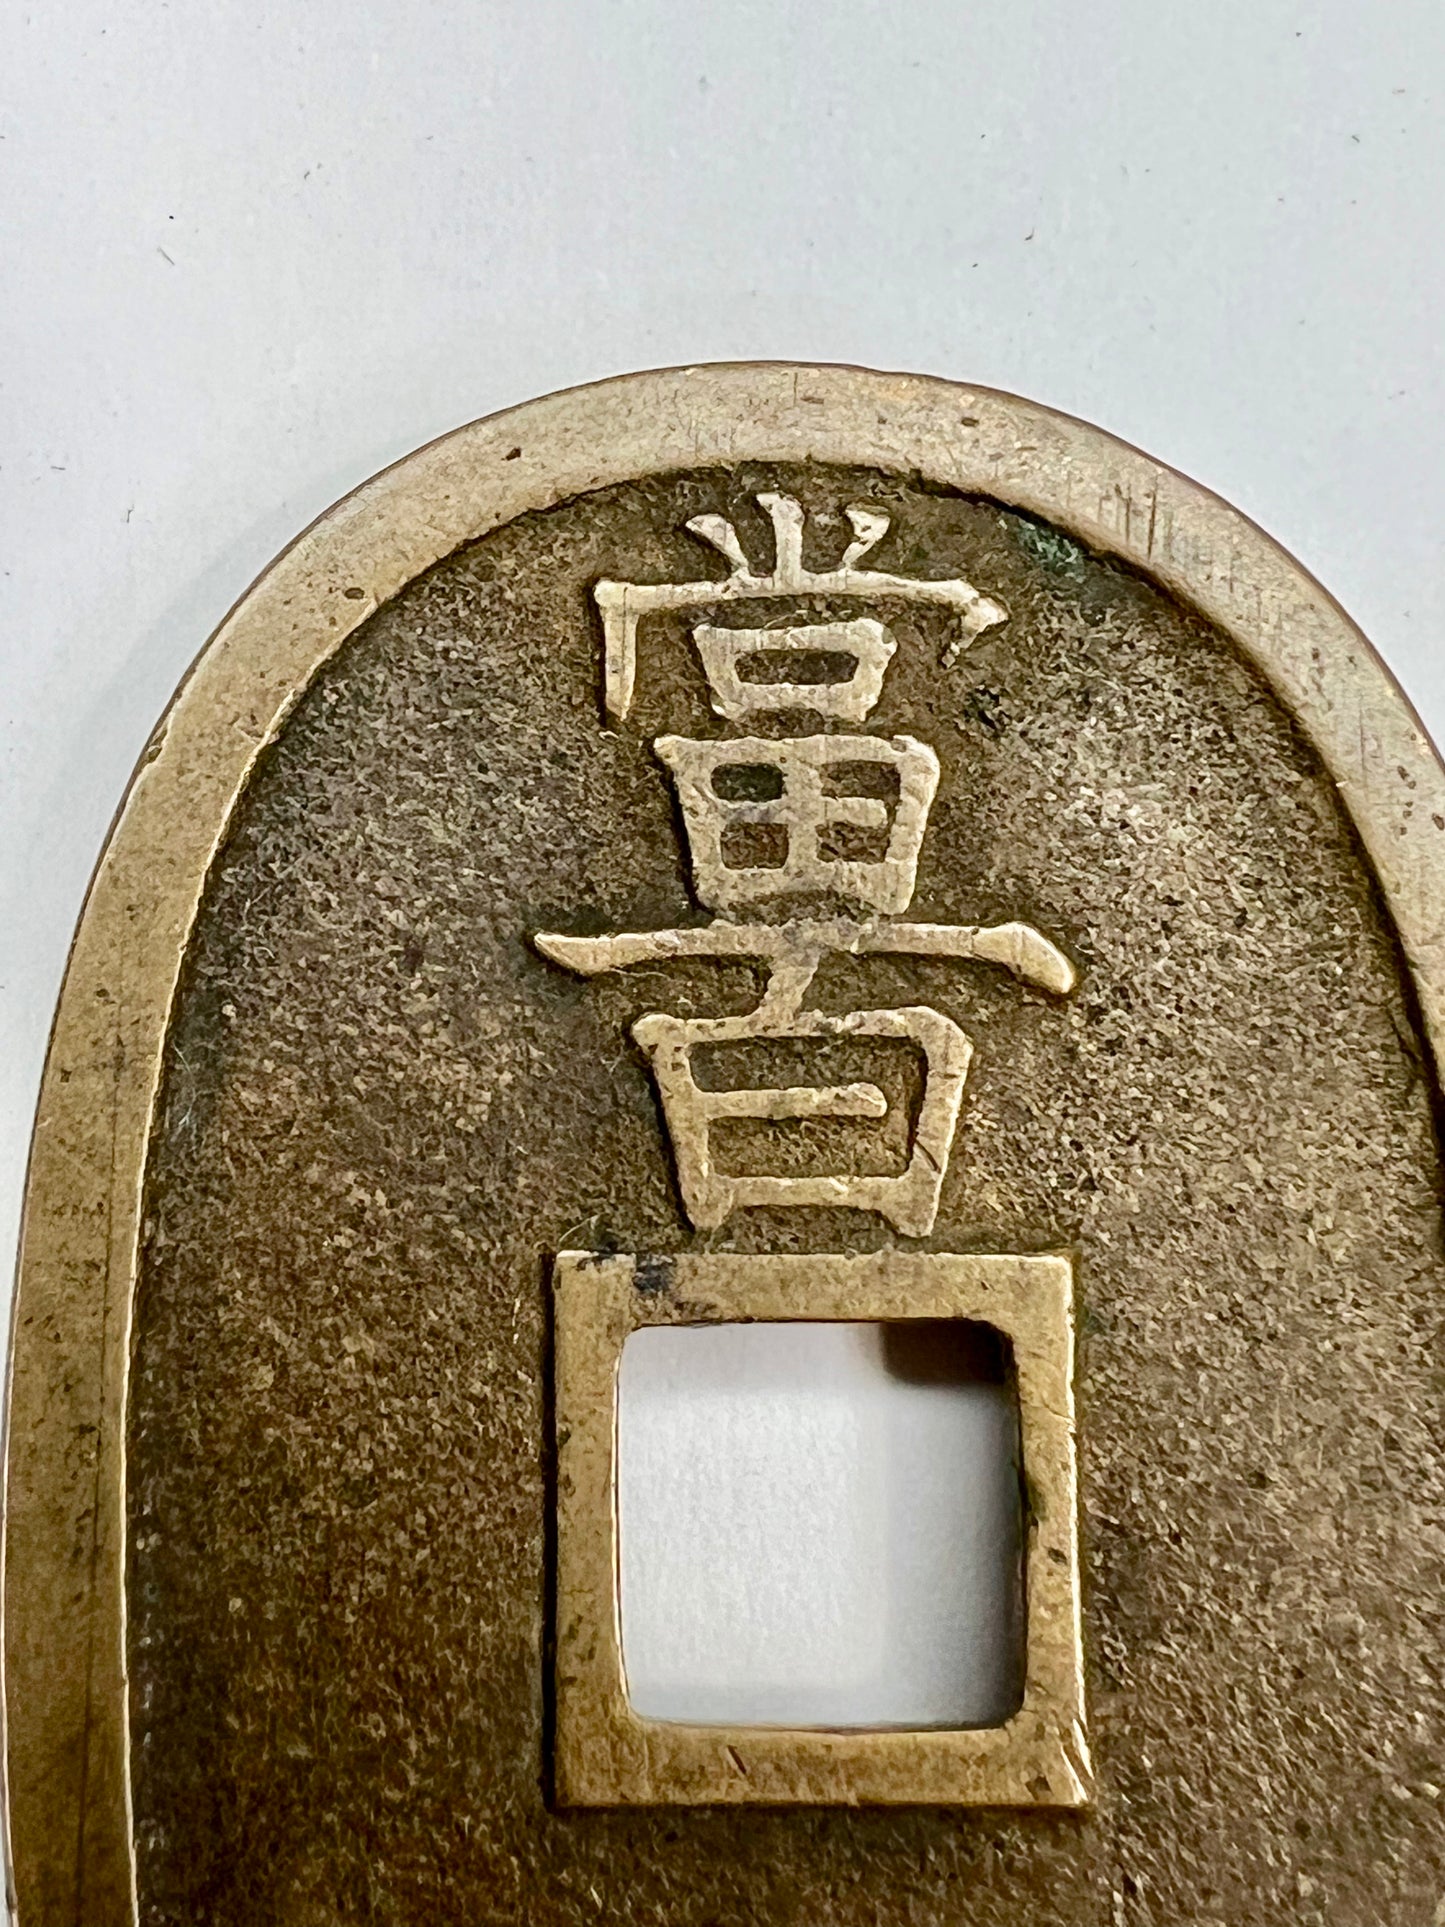 Antique c1830-1866 Japanese Bronze Coin: Tempo Tsuho 100 Mon Coin